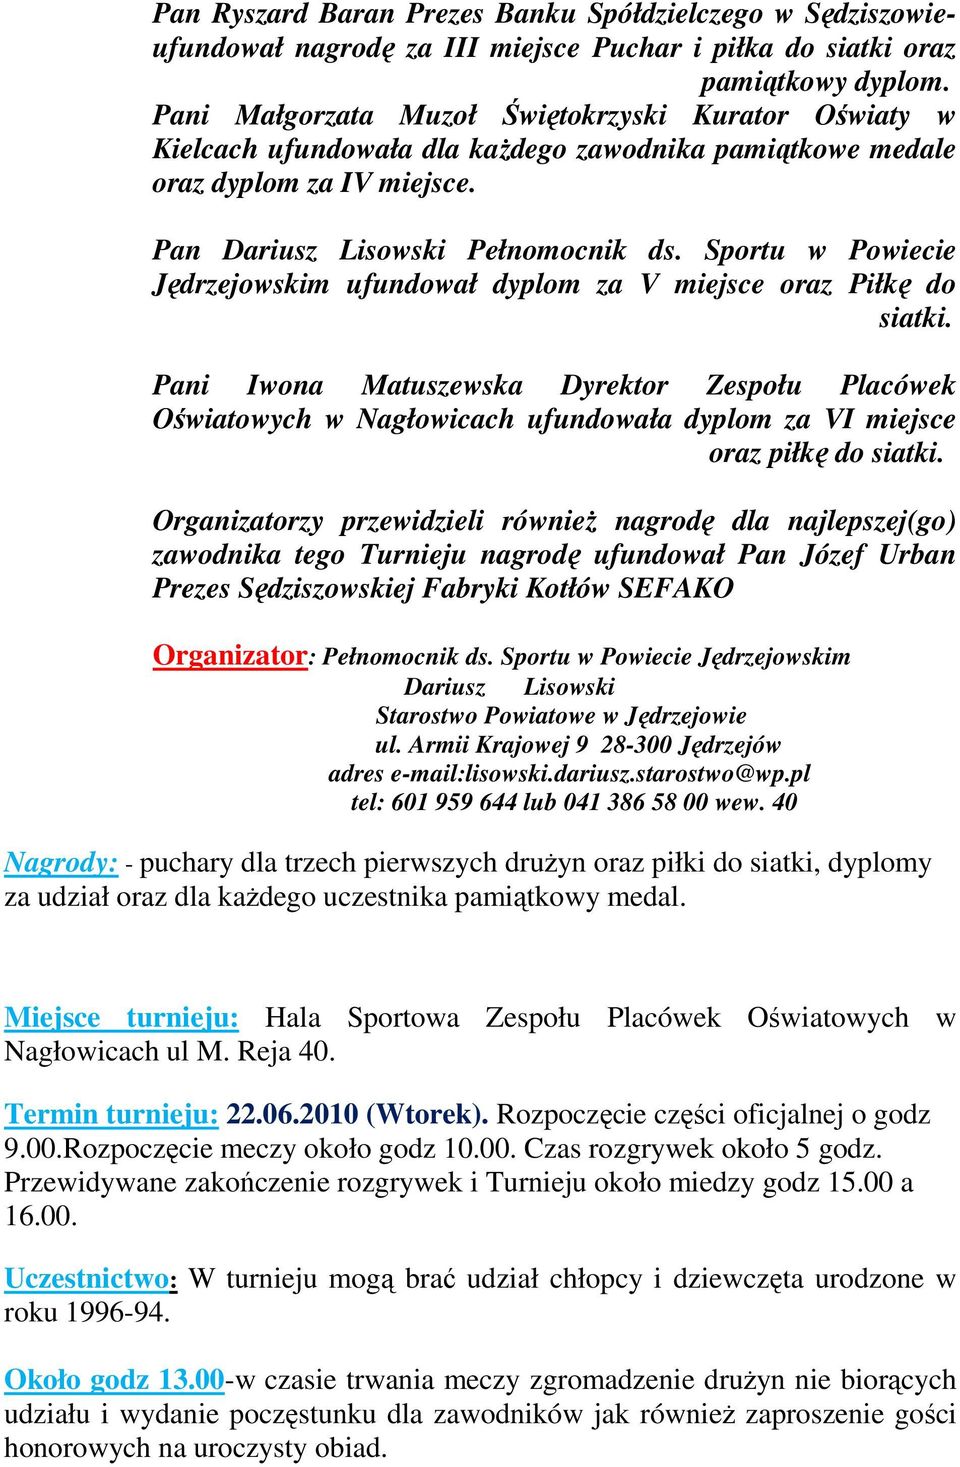 Sportu w Powiecie Jędrzejowskim ufundował dyplom za V miejsce oraz Piłkę do siatki.